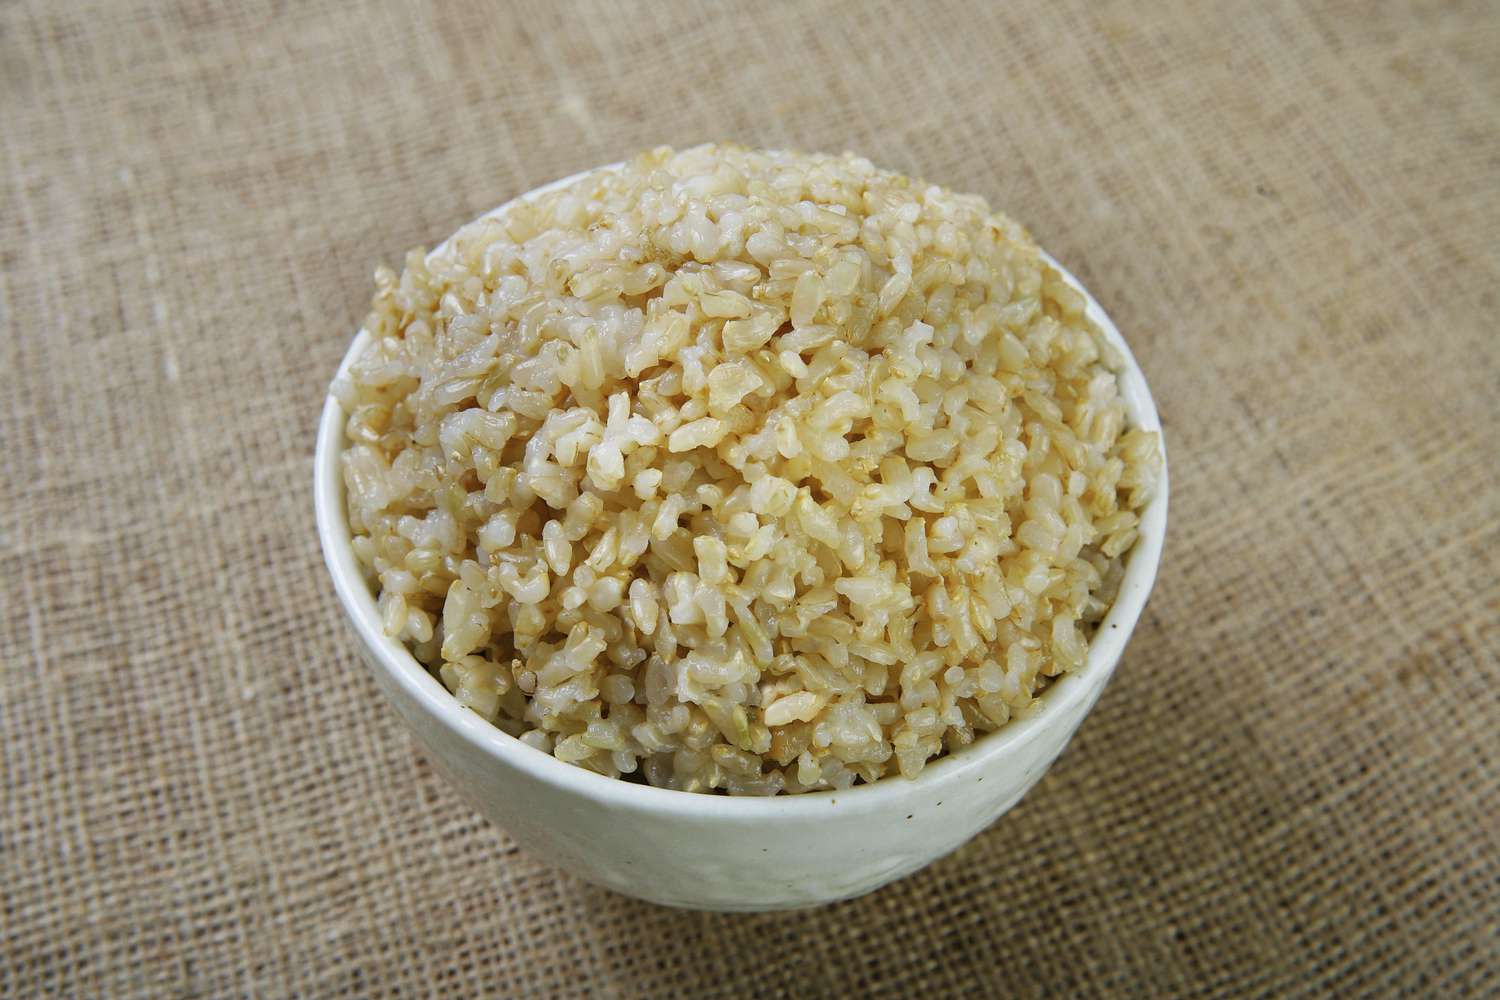 Bruine rijst is rijk aan magnesium.